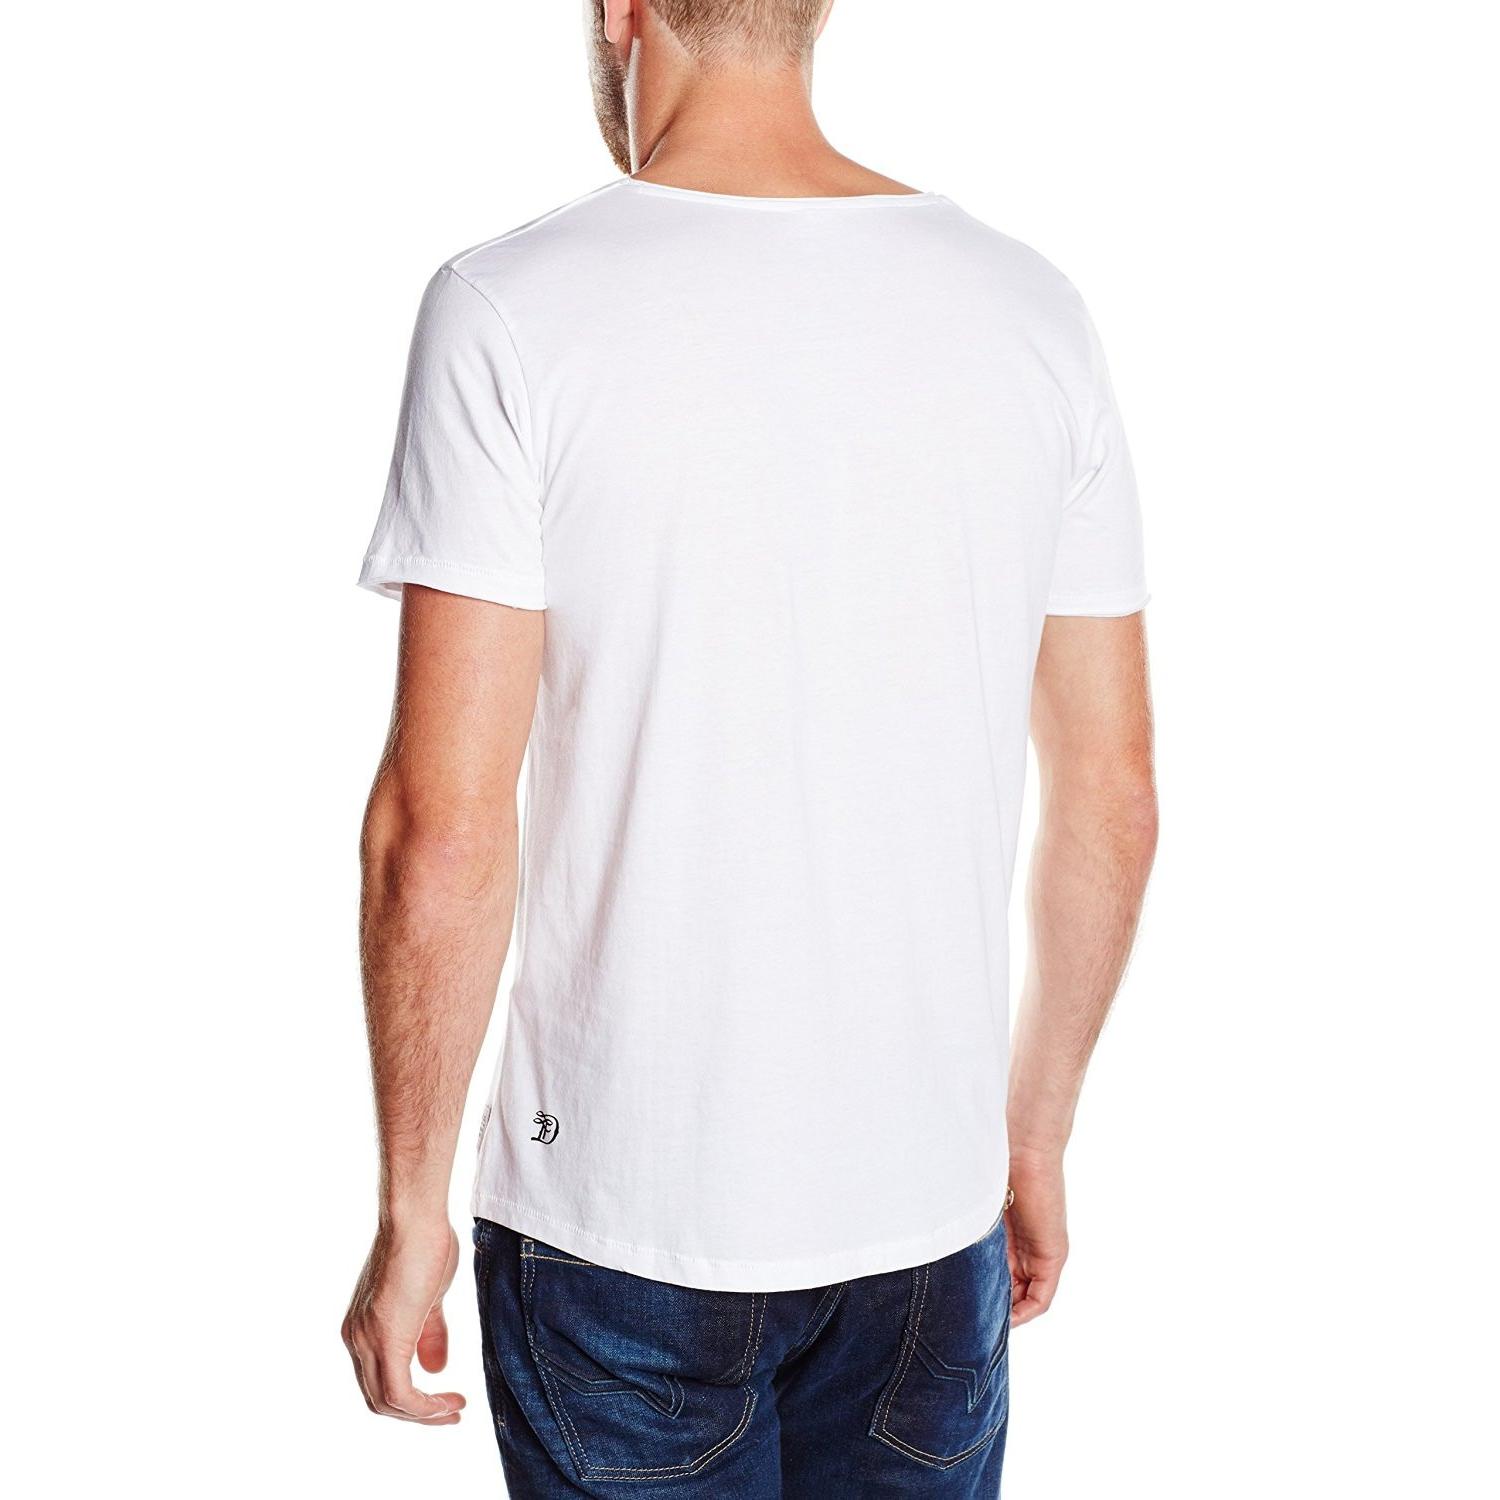 Tom Tailor Mens Print T-Shirt White T2000 103233200.